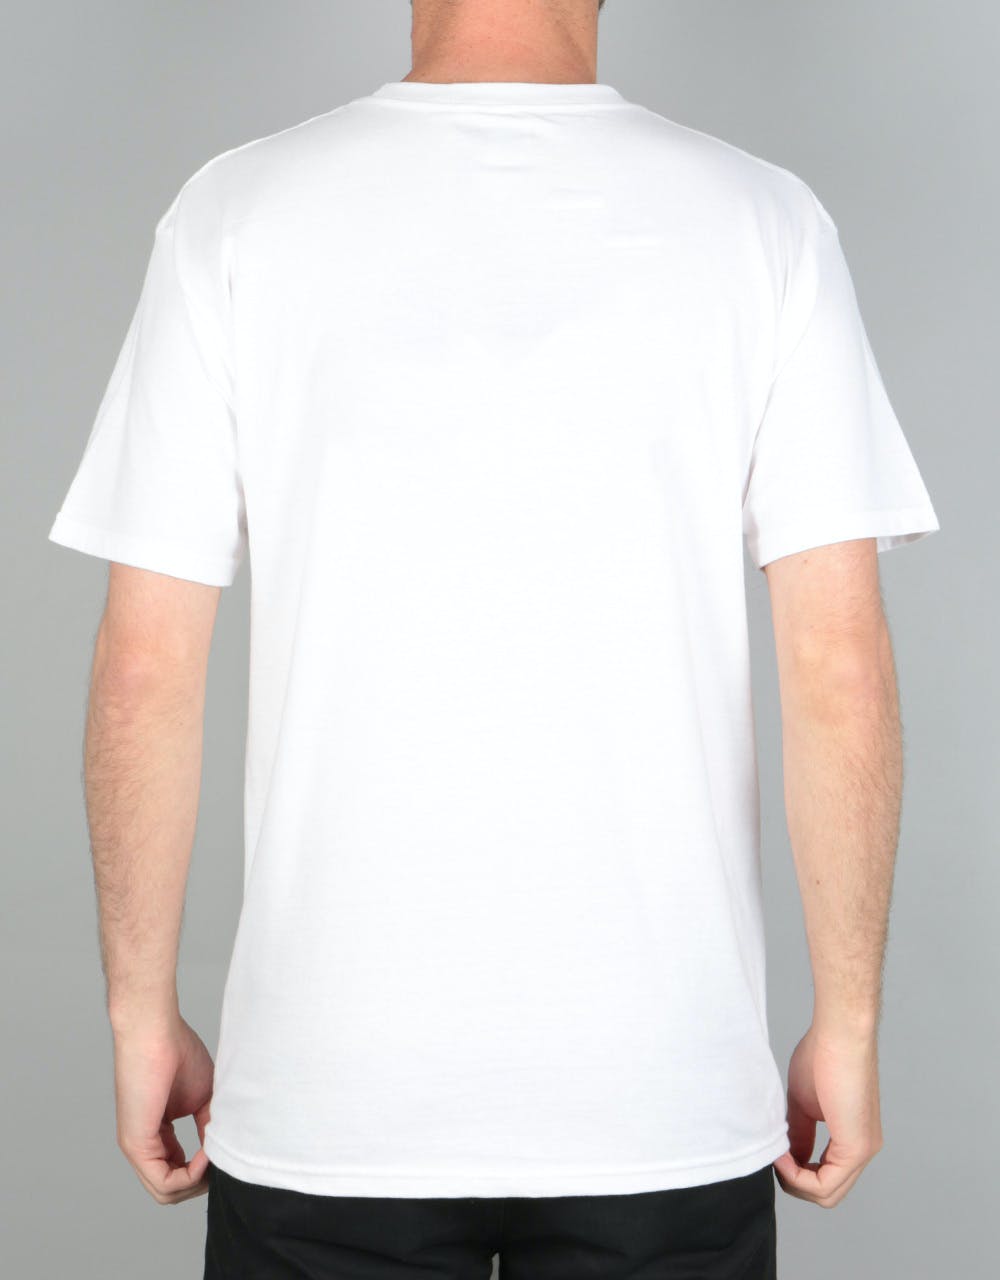 Thrasher Gonz T-Shirt - White